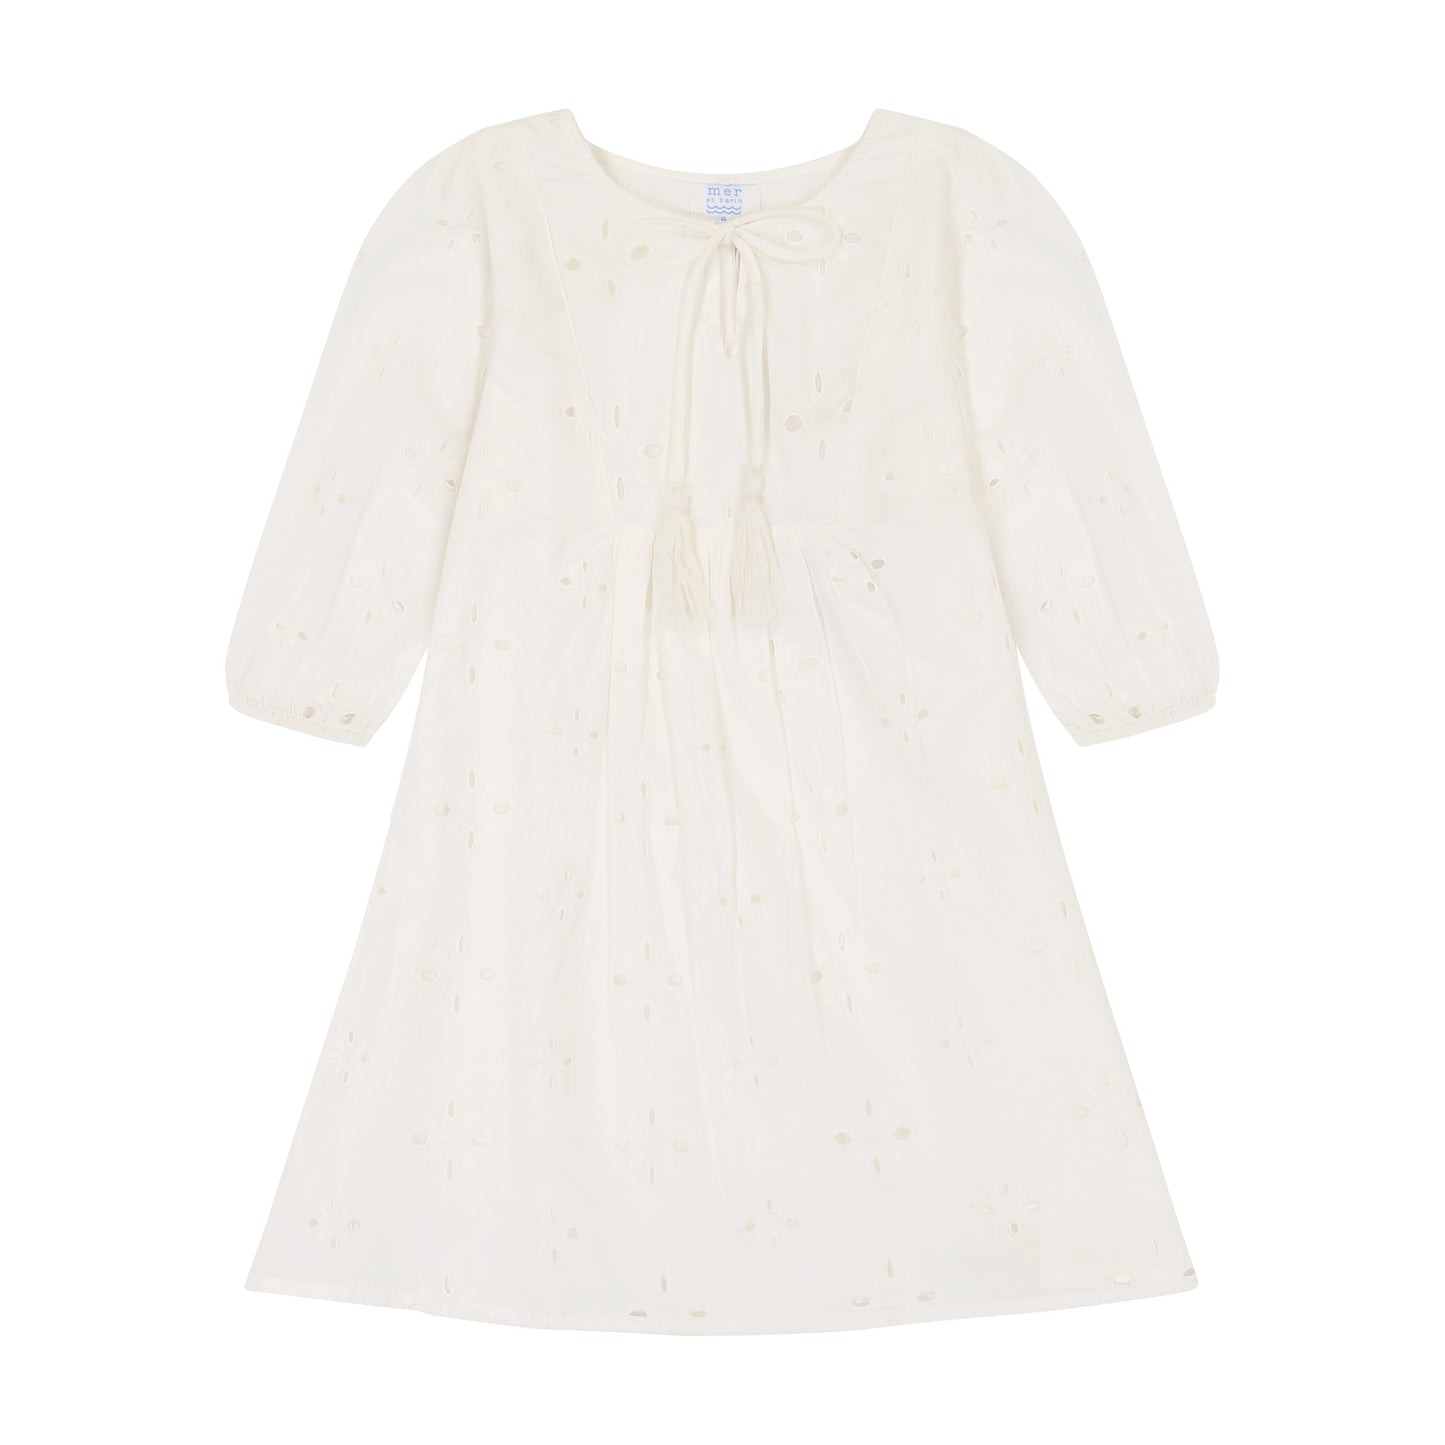 Isabelle Girl's Popover Dress White Eyelet- final sale